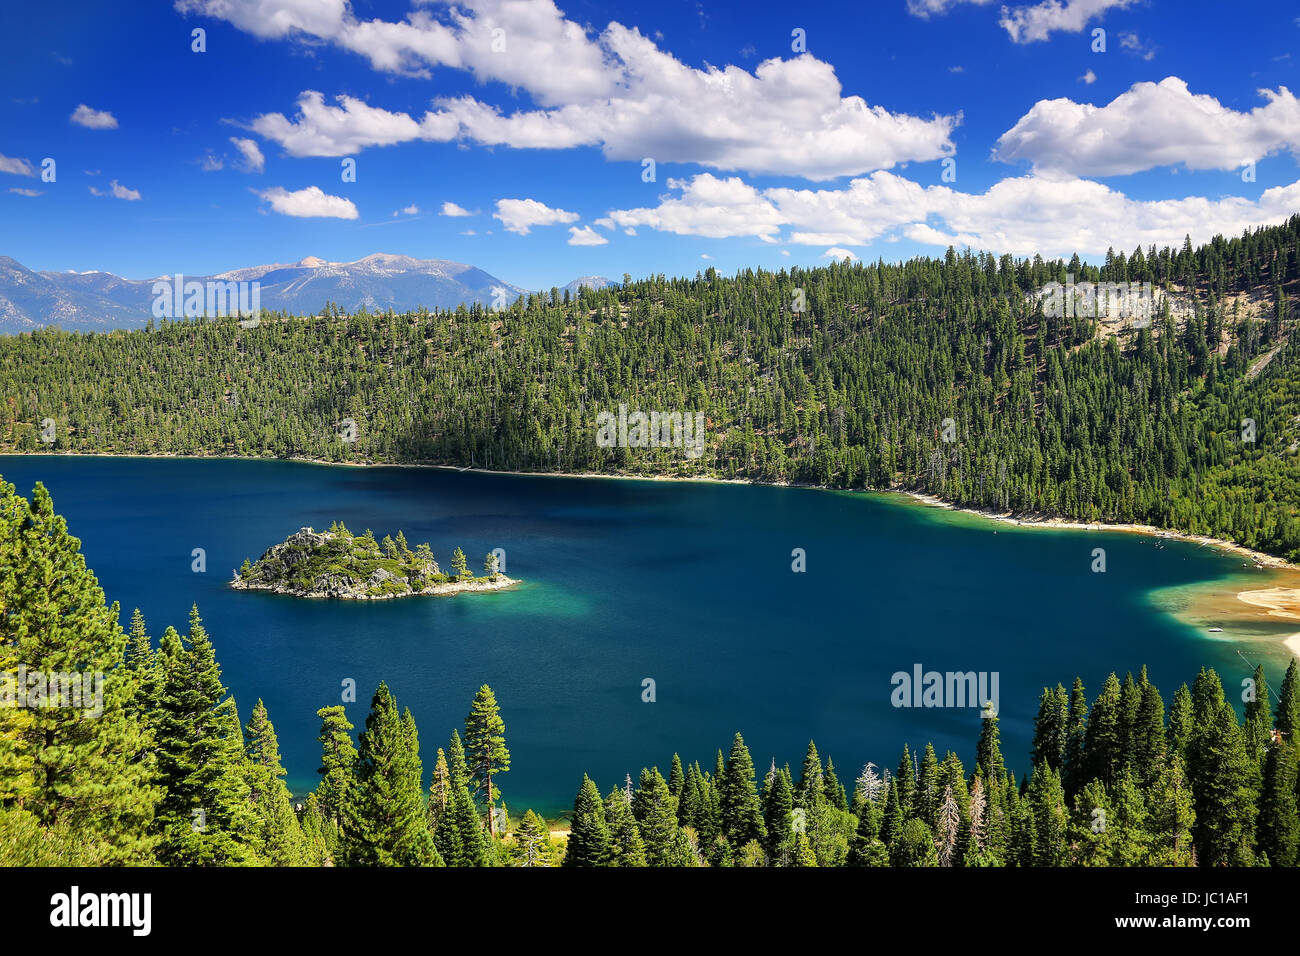 Fannette Island in Emerald Bay sul Lago Tahoe, California, Stati Uniti d'America. Il lago Tahoe è il più grande lago alpino in America del Nord Foto Stock